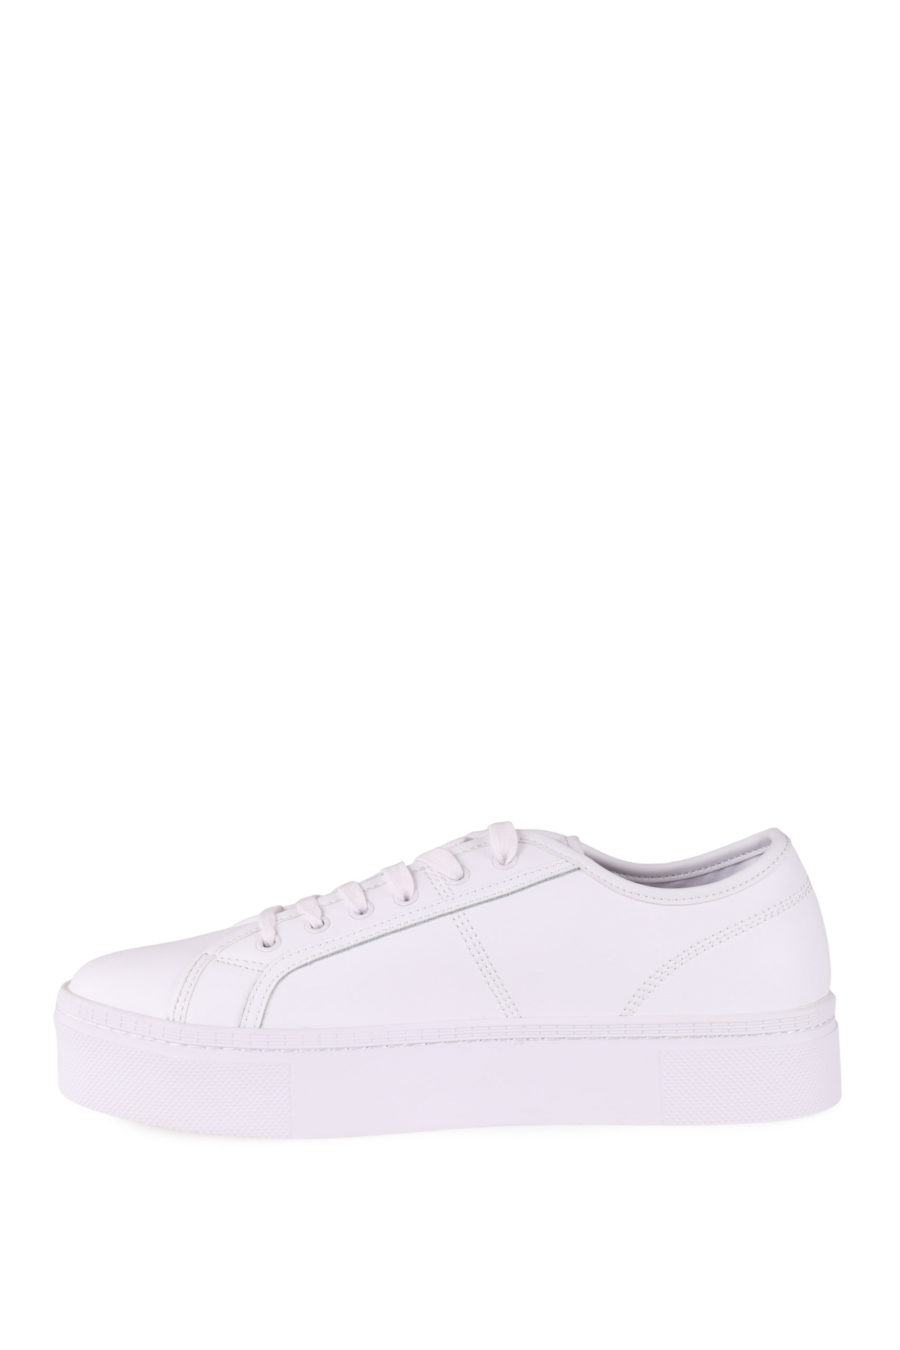 Versace Jeans Couture sapatilhas brancas com sola com logótipo - (Duplicado importado de WooCommerce) - IMG 0441 em escala